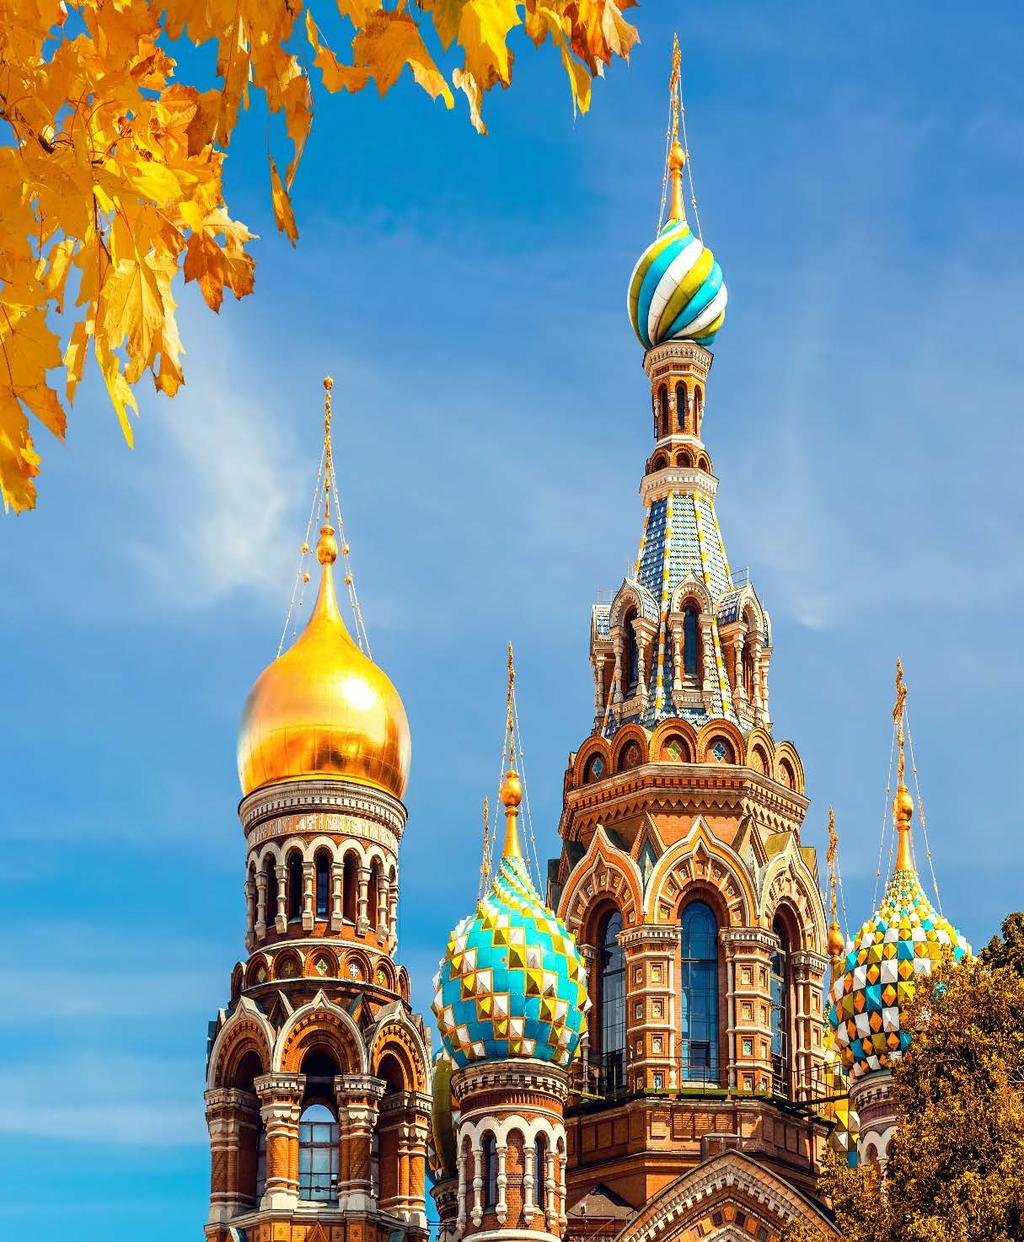 Η Μόσχα έχει πλήθος μνημείων και αξιοθέατων και πολύ σημαντικών περιοχών που για να τα εξερευνήσουμε θέλουμε Σούπερ 9ήμερη Ρωσία με τον «Χρυσό